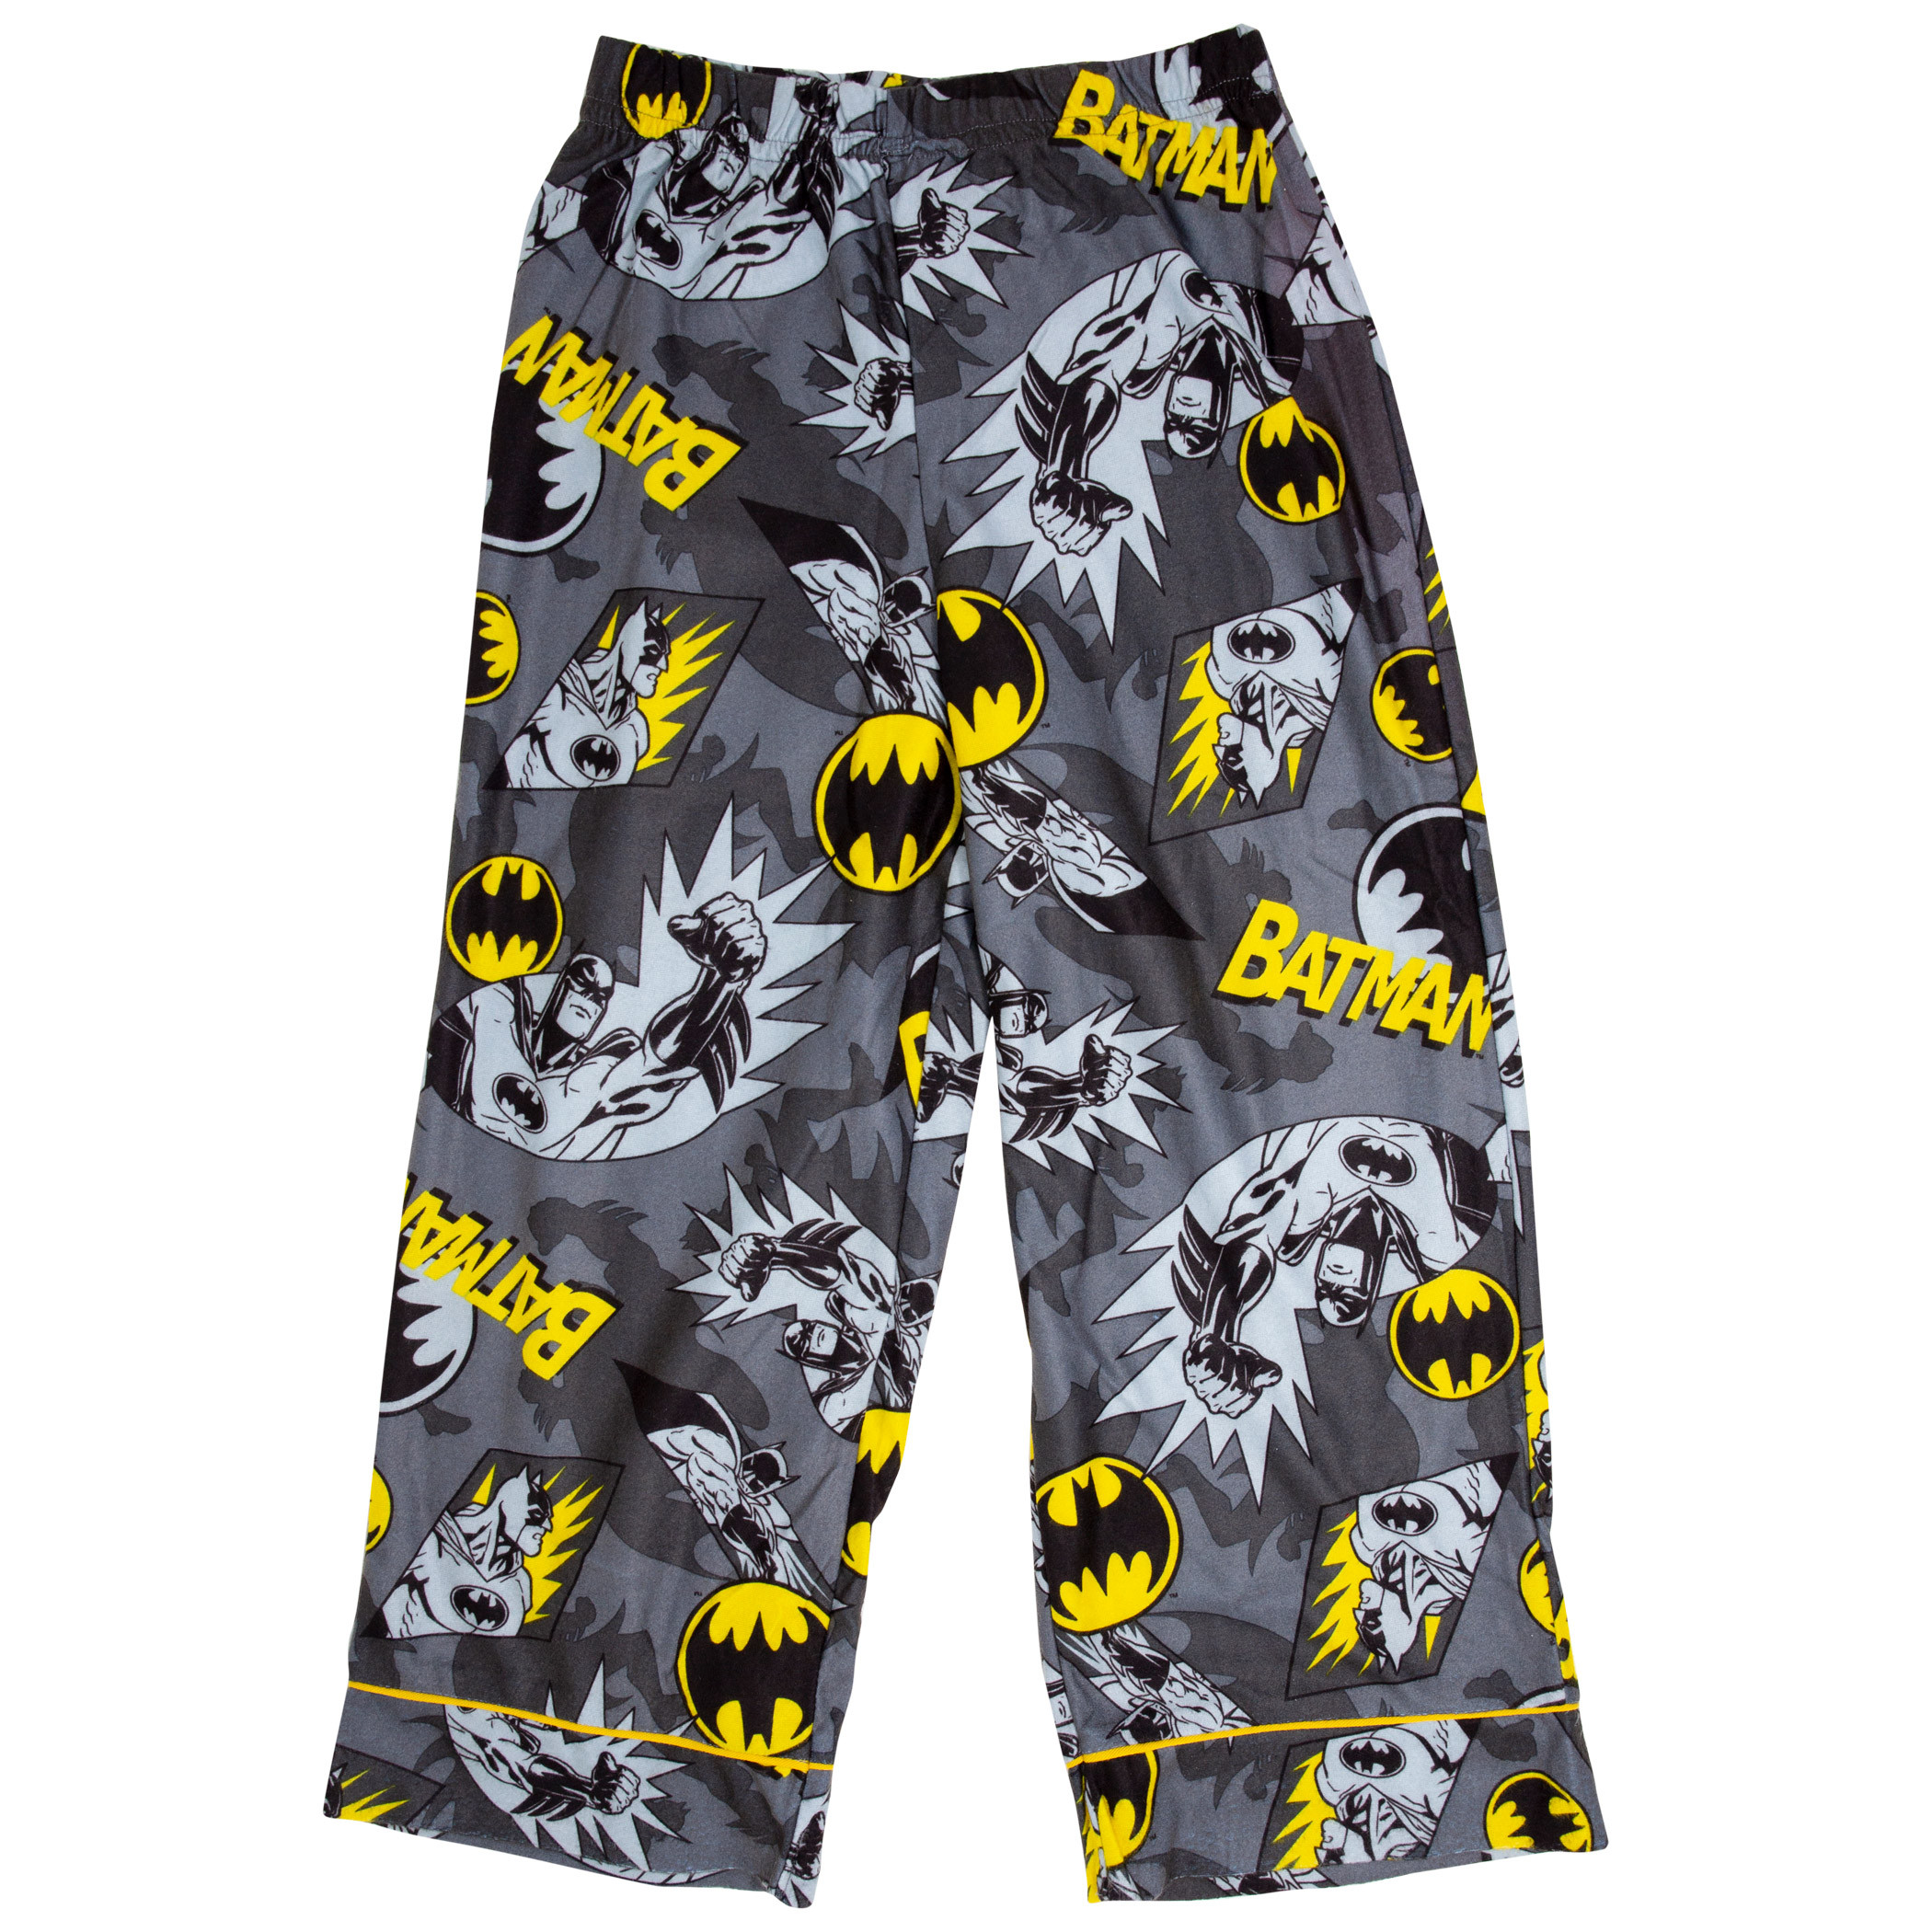 Batman All Over Print Kids Pajama Set